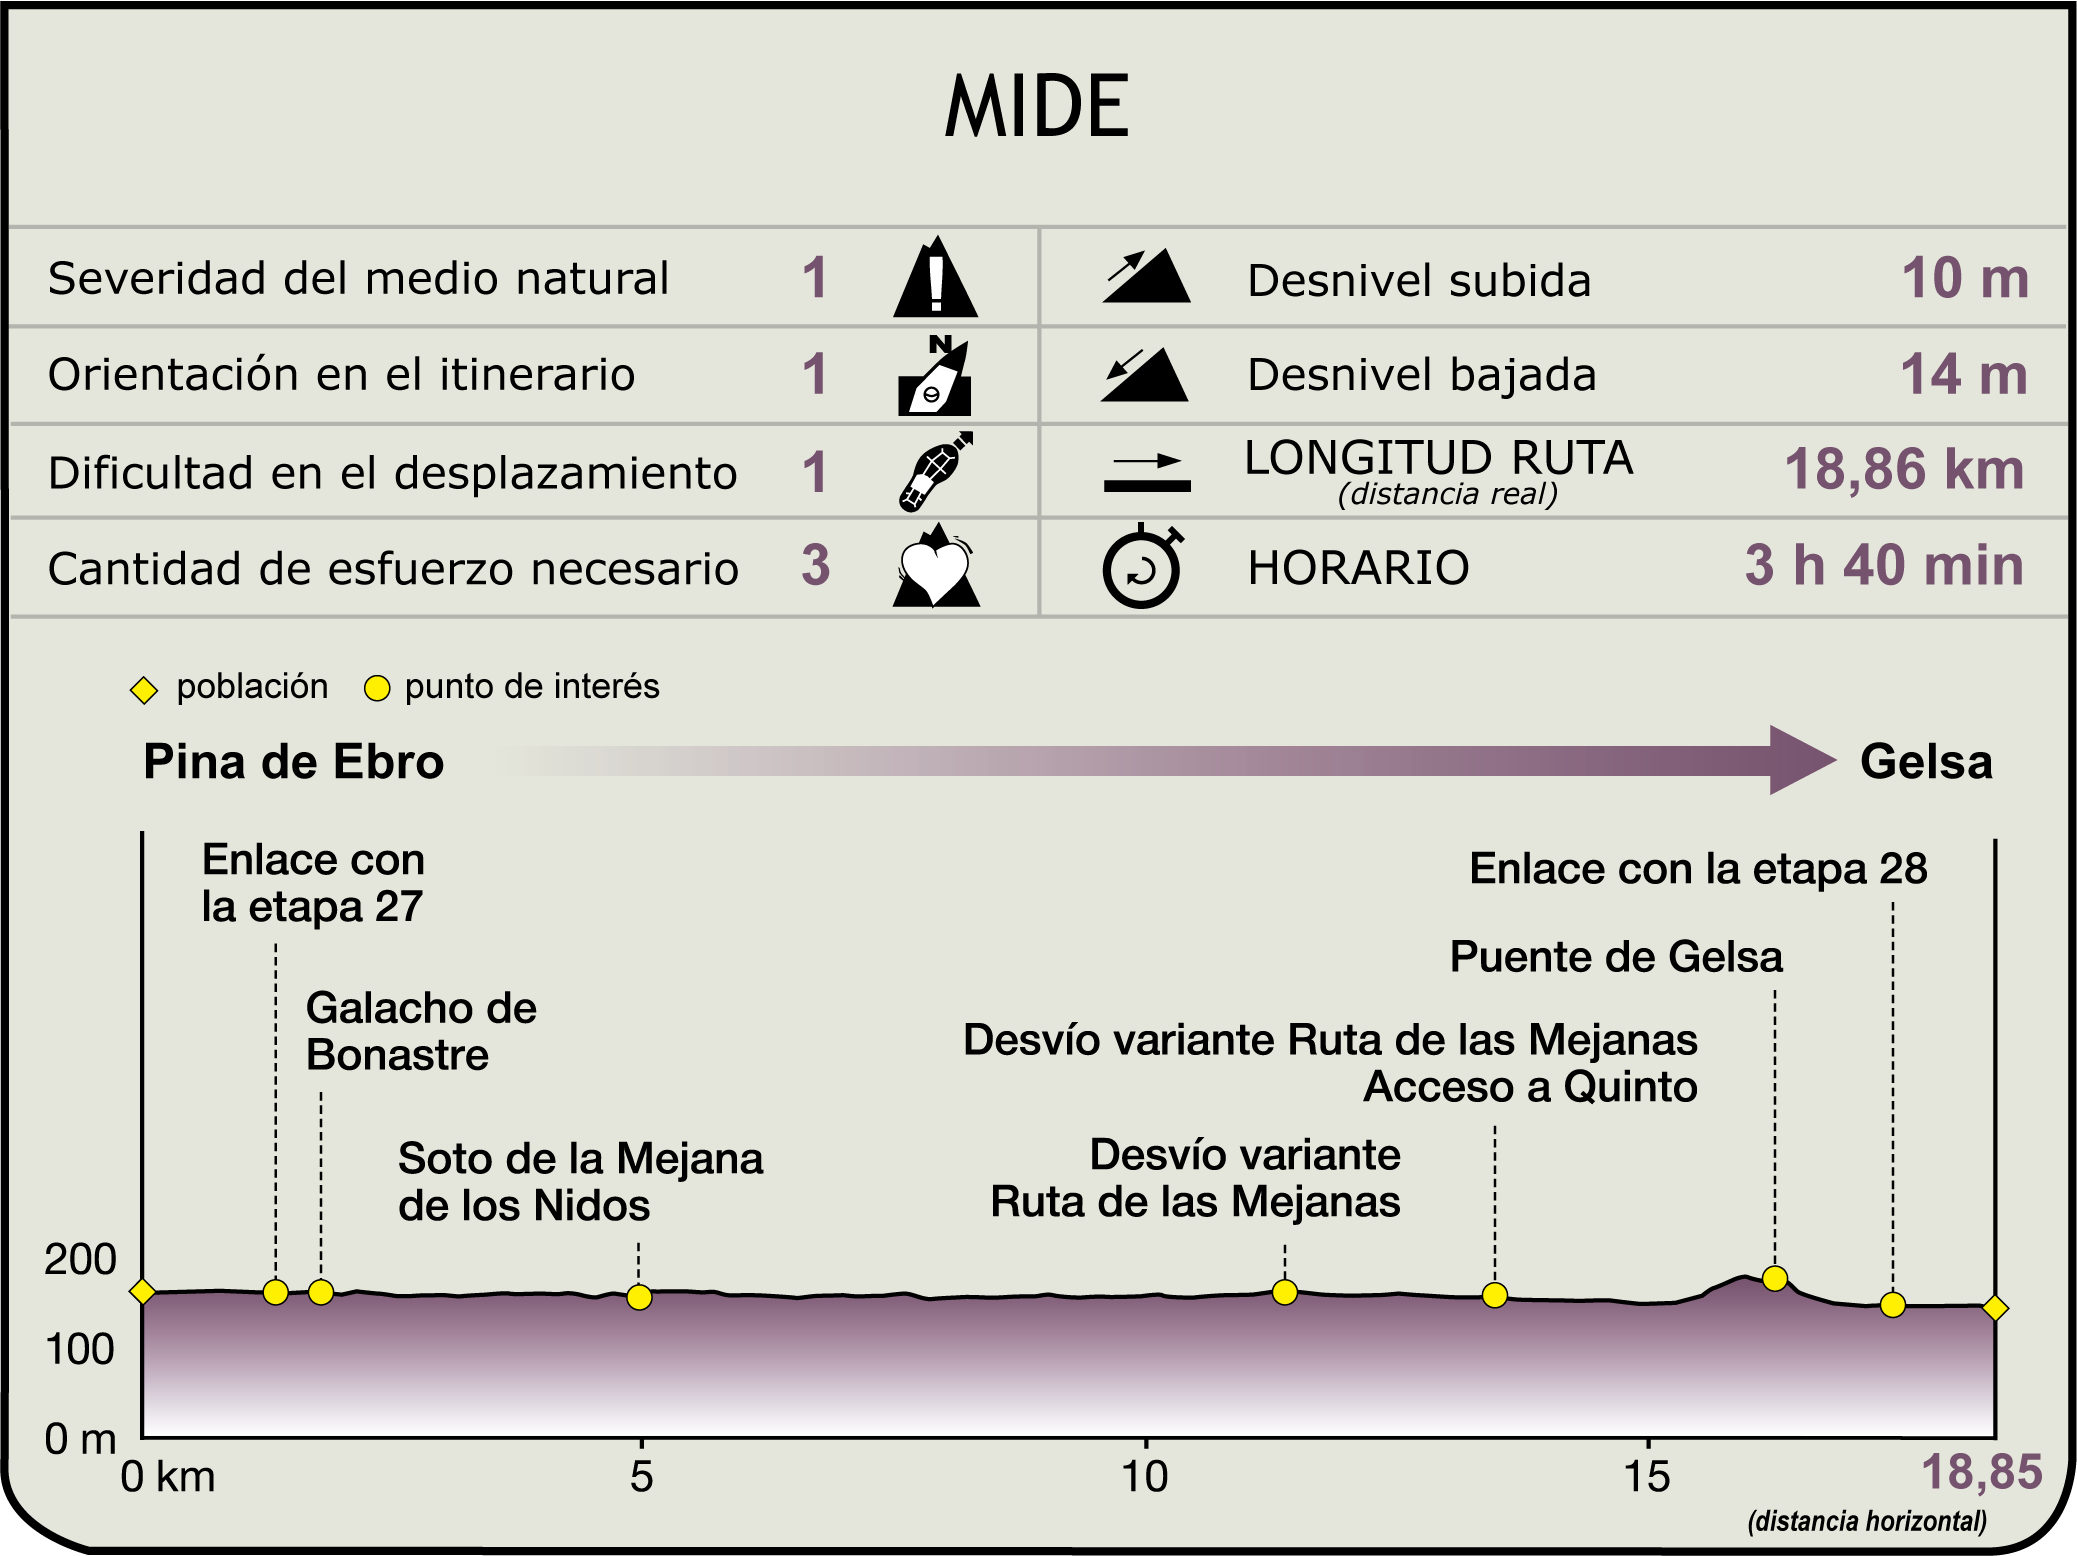 Perfil MIDE de la Etapa Pina de Ebro-Gelsa